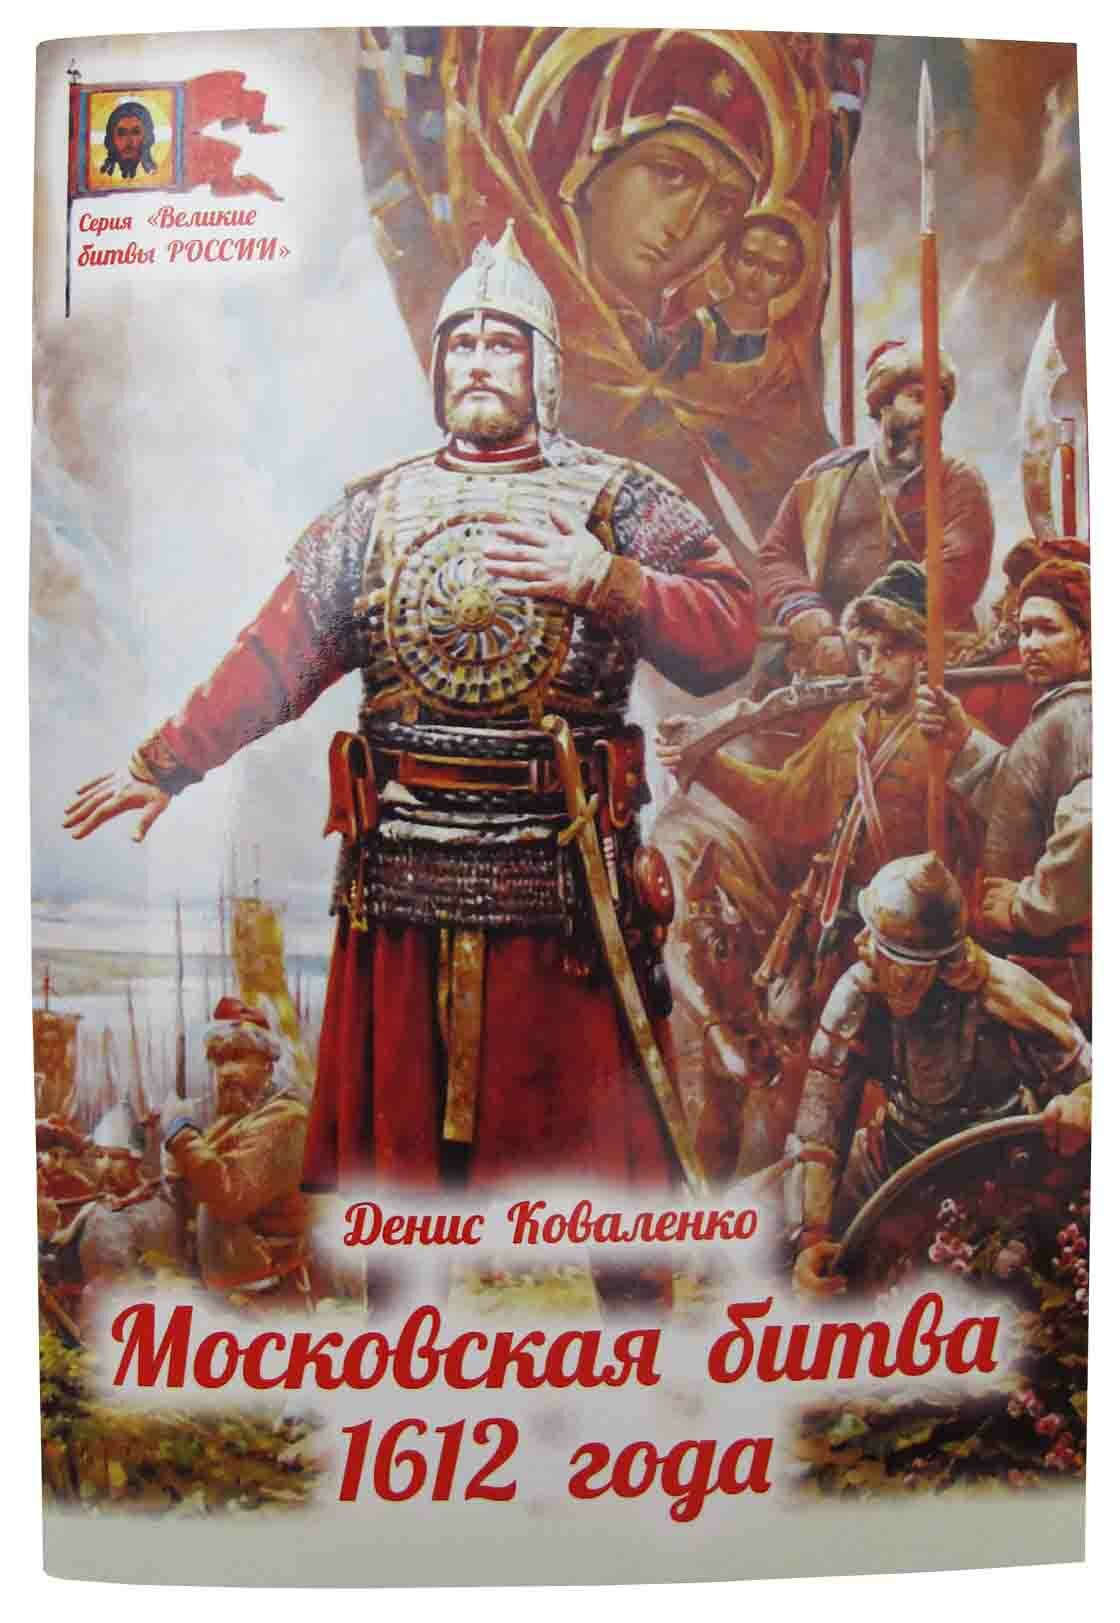 Коваленко Денис "Московская битва 1612 года"